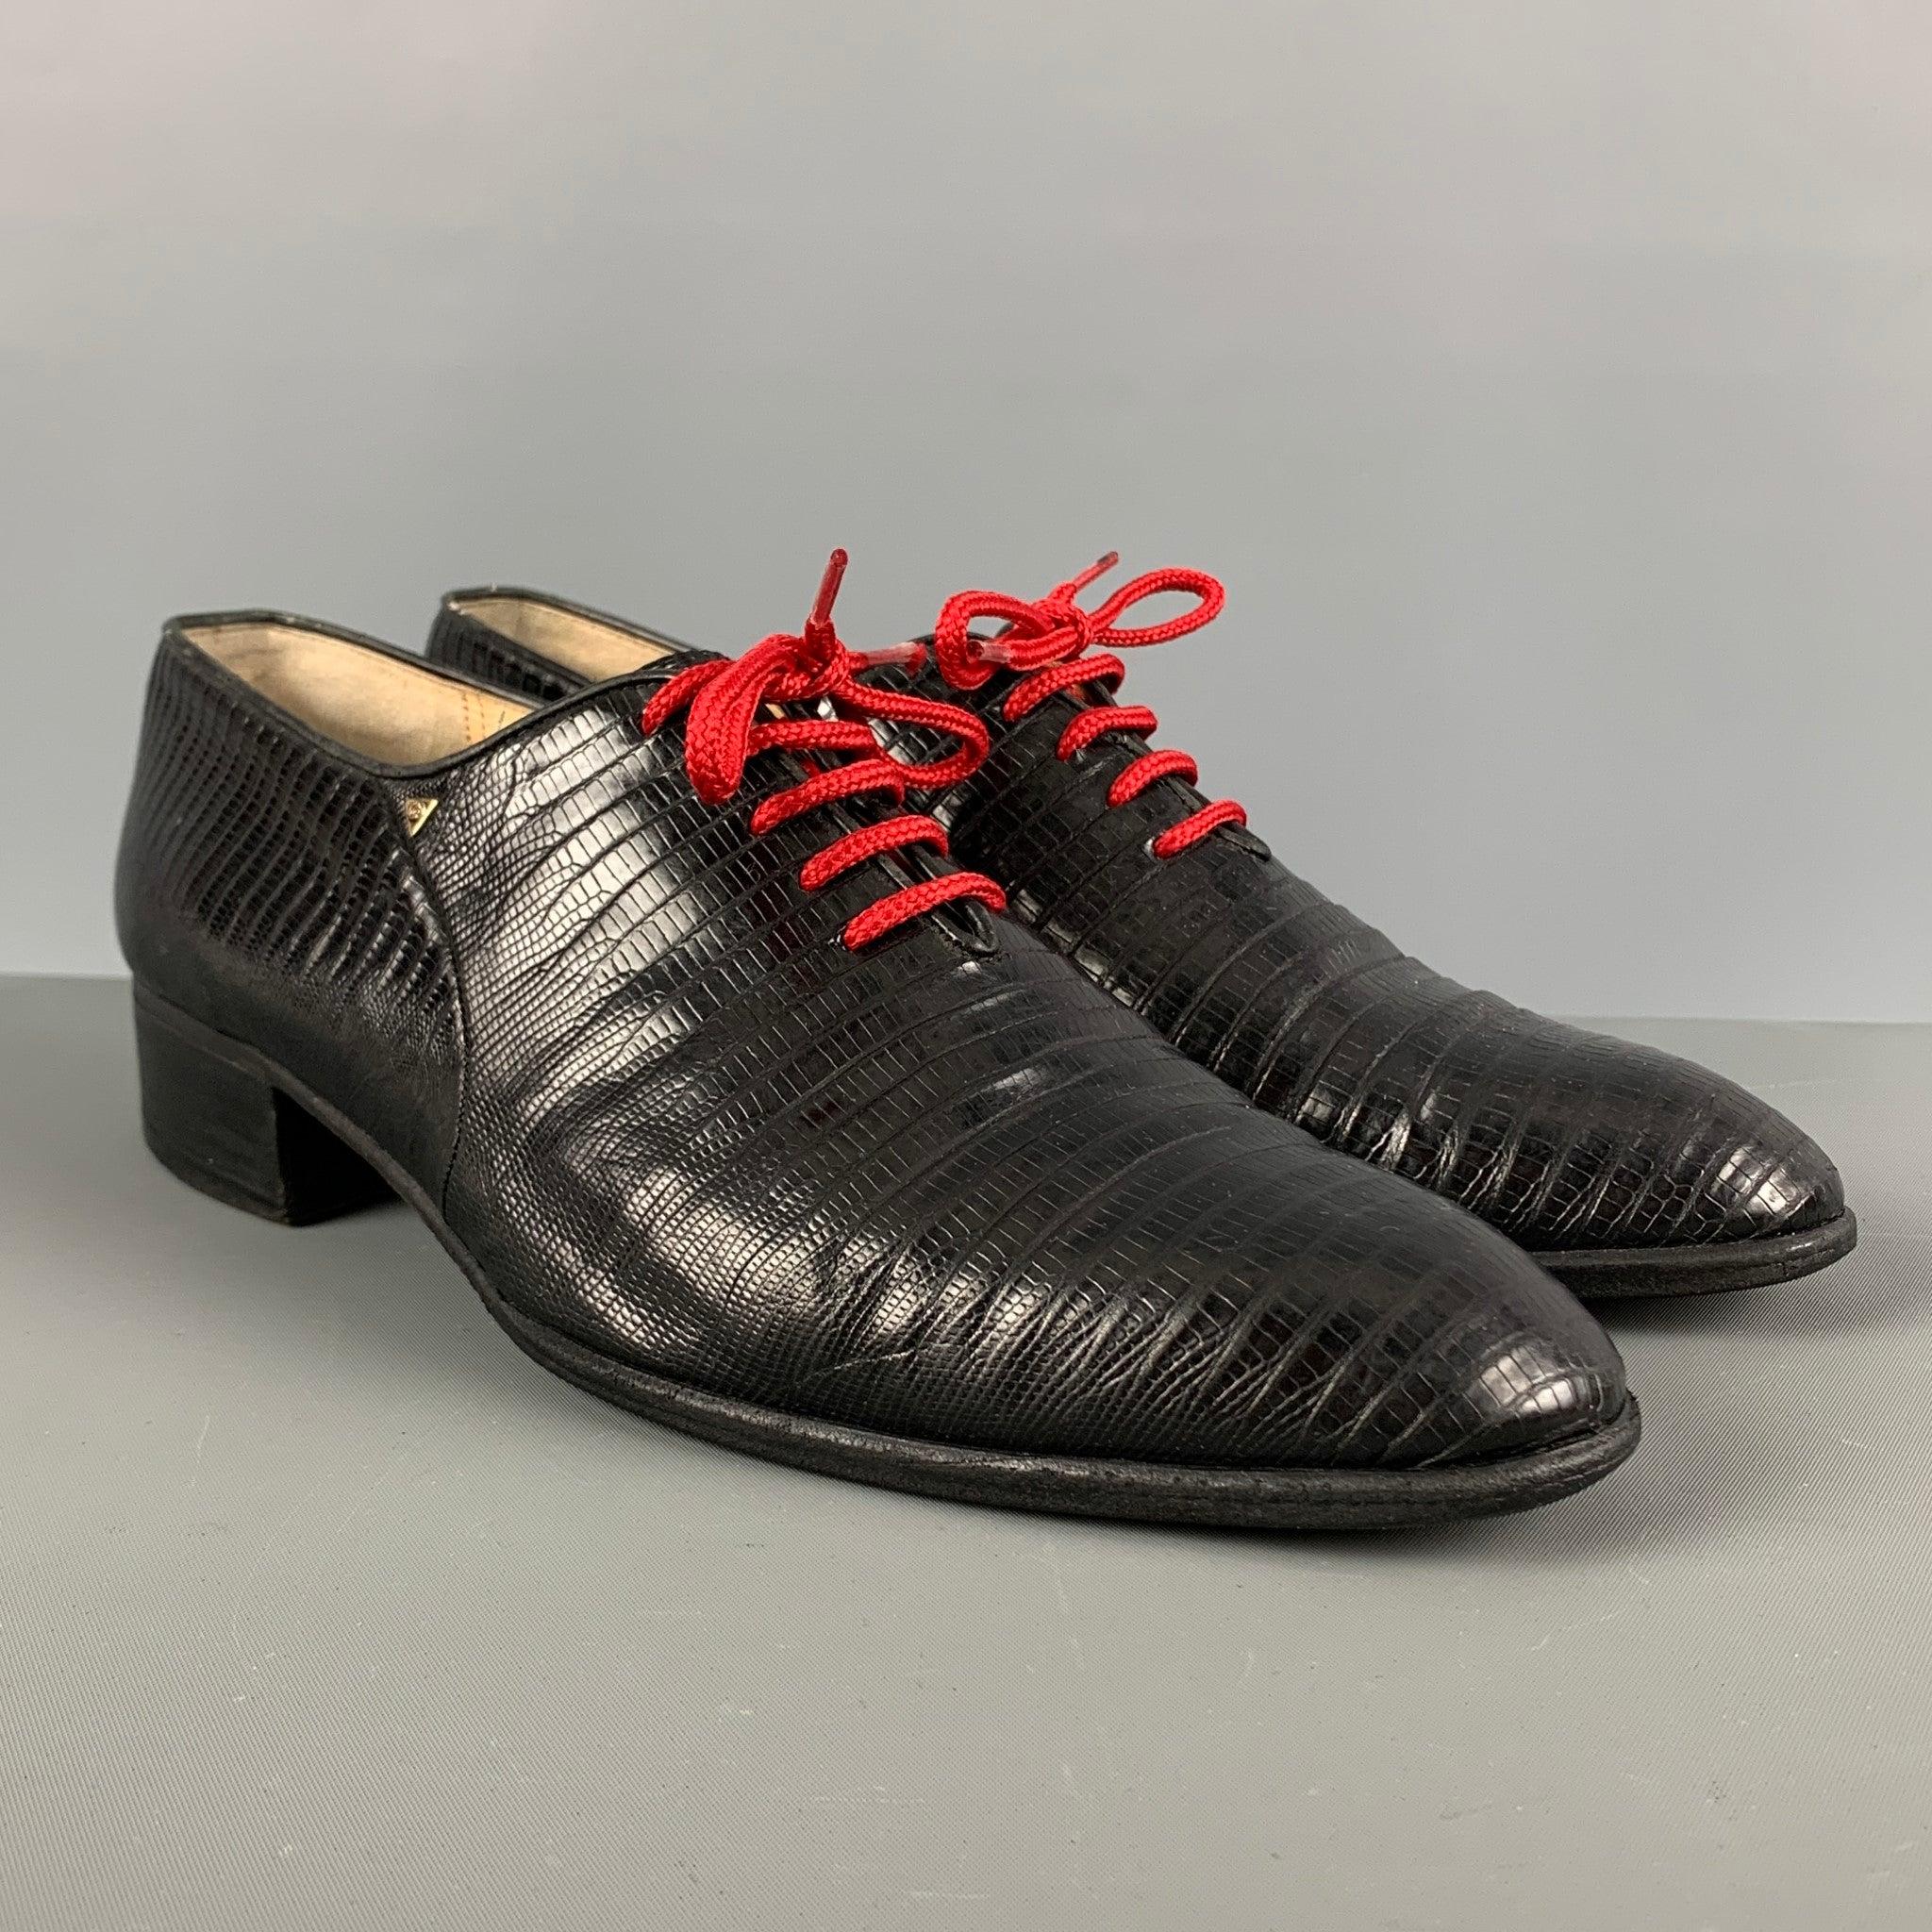 GUCCI VINTAGE Schuhe aus schwarzem geprägtem Leder mit rotem Schnürverschluss. Hergestellt in Italien, guter gebrauchter Zustand. Im Ist-Zustand. 

Markiert:   42 1/2 0003 111Außensohle: 11 Zoll  x 3,75 Zoll 

  
  
 
Referenz: 124990
Kategorie: